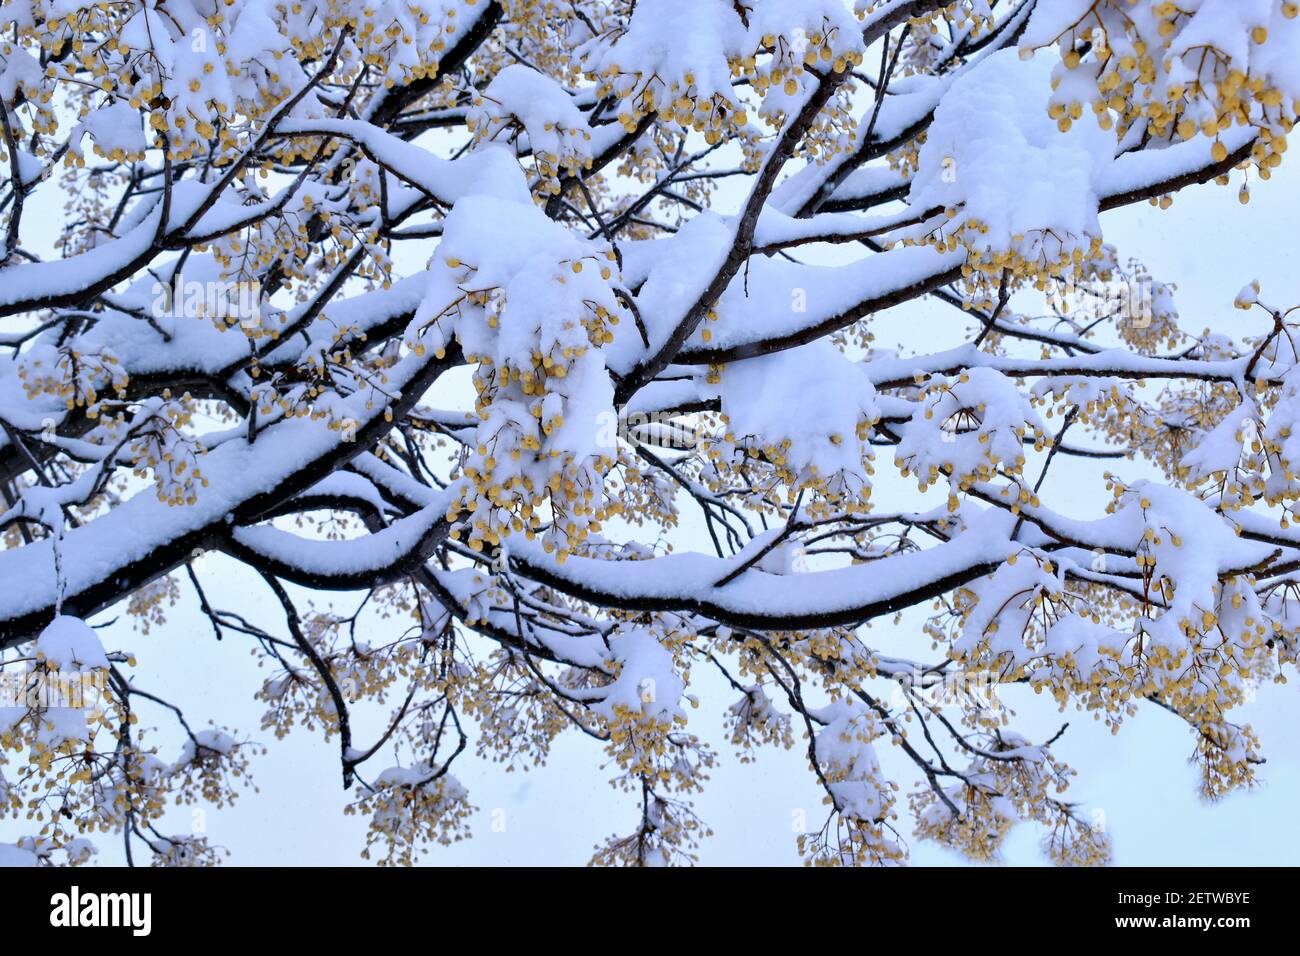 Albero innevato. Rami di alberi ricoperti di neve nella insolita e grande nevicata della città di Madrid, durante il passaggio della tempesta di neve Filomena Foto Stock